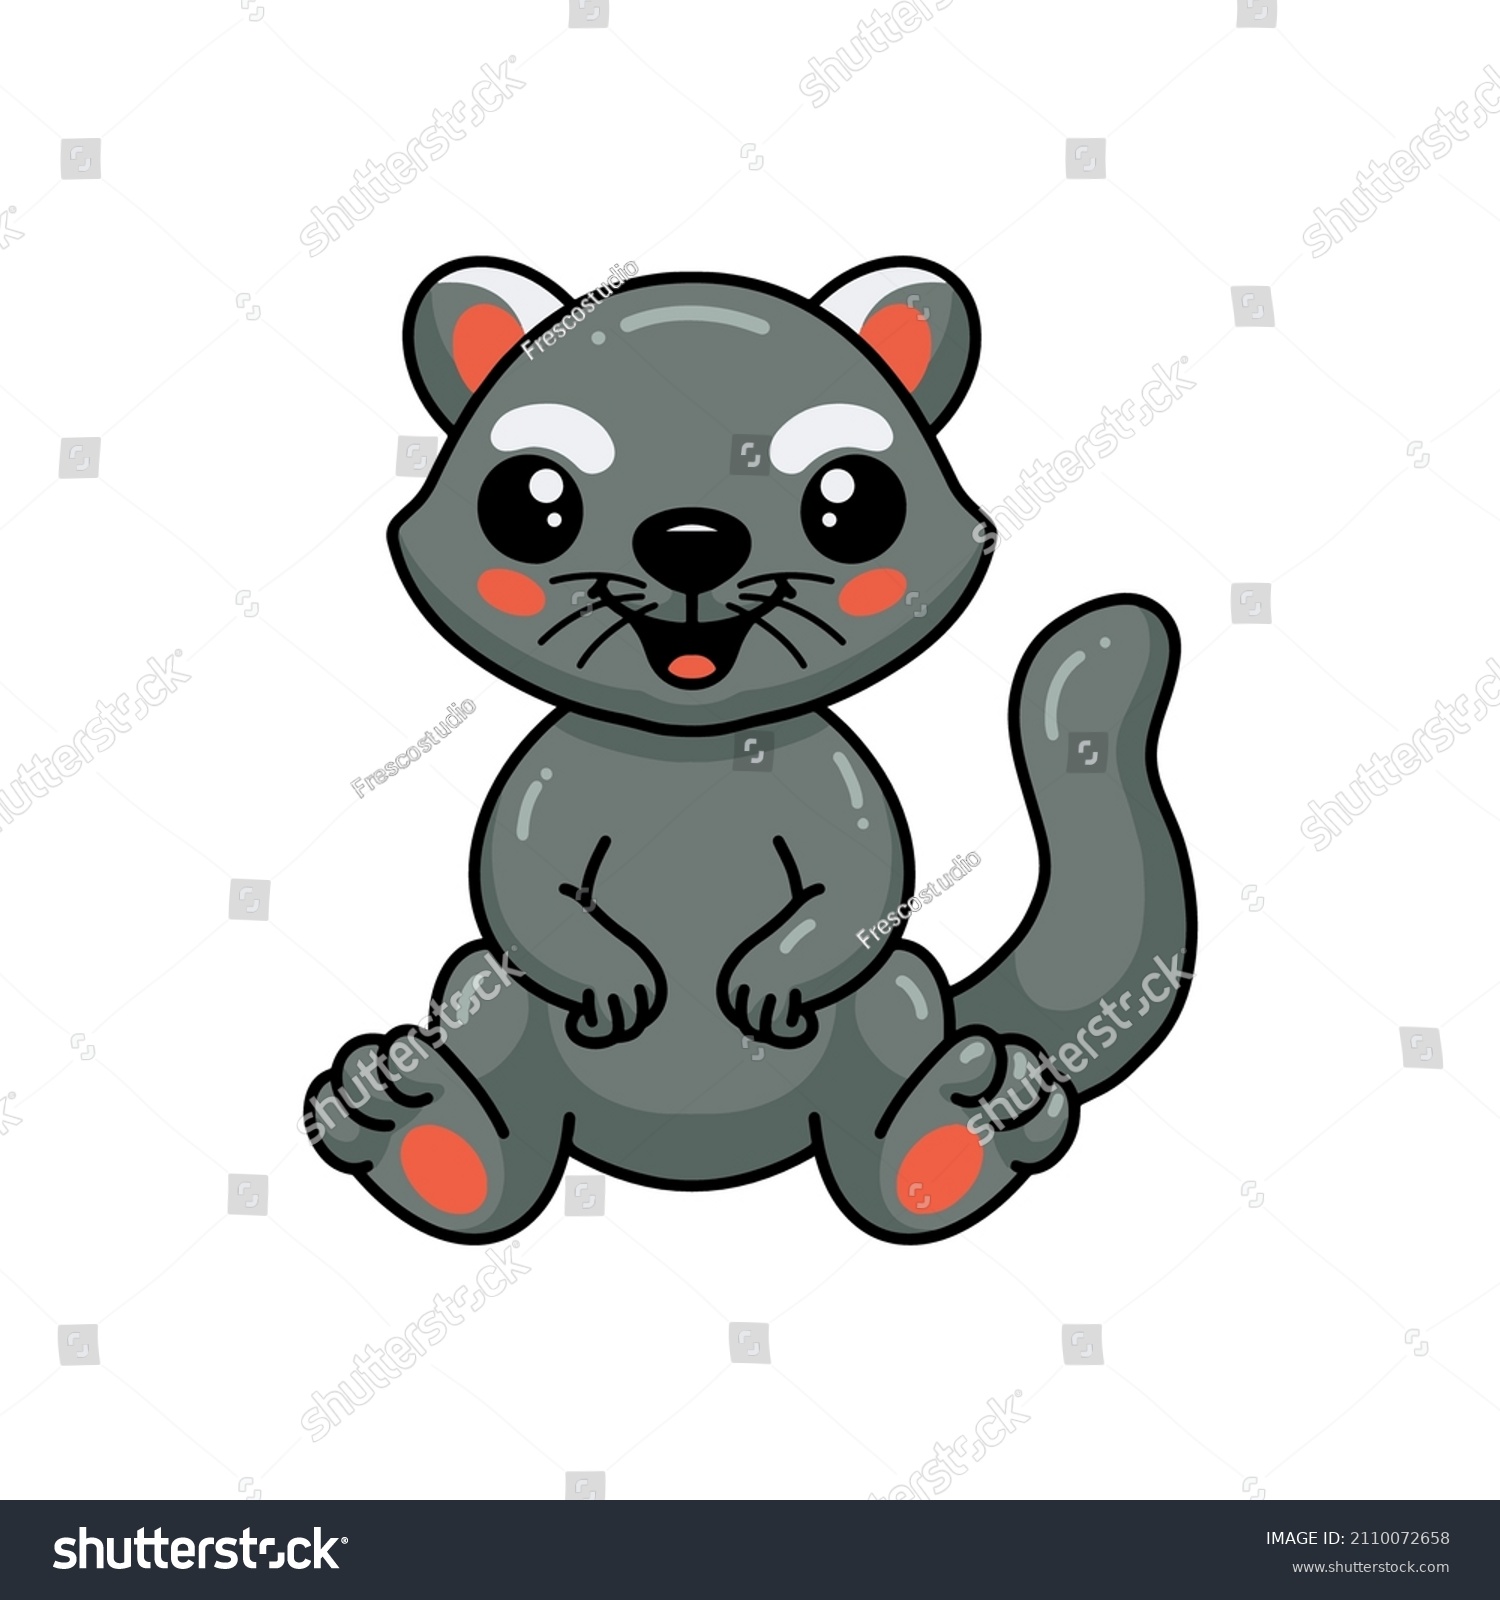 SVG of Cute little bearcat cartoon sitting svg